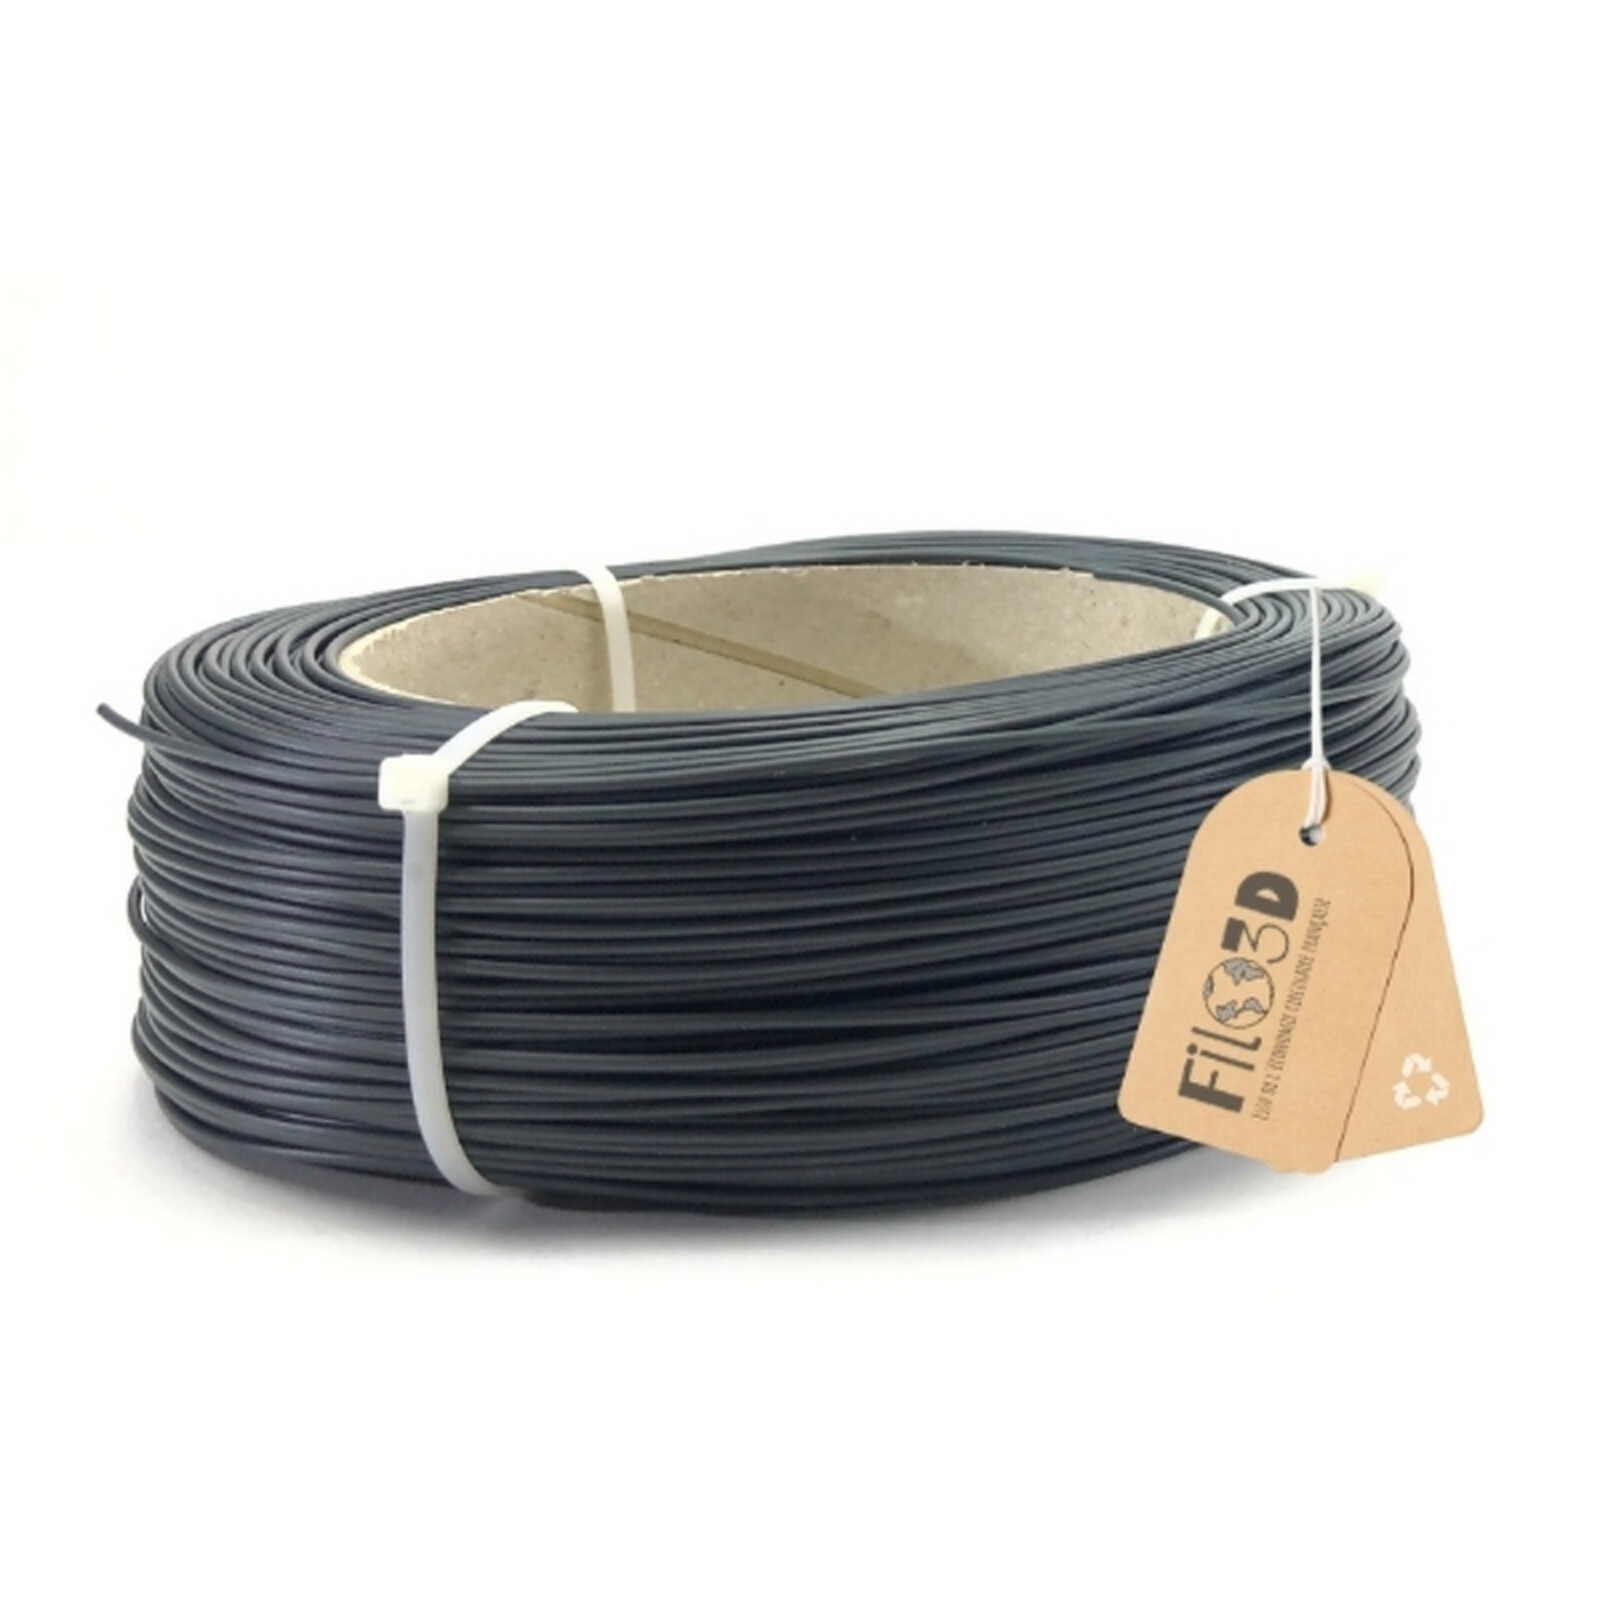 Filo3D - PLA Noir 500g - Filament 1.75mm - Filament 3D - LDLC